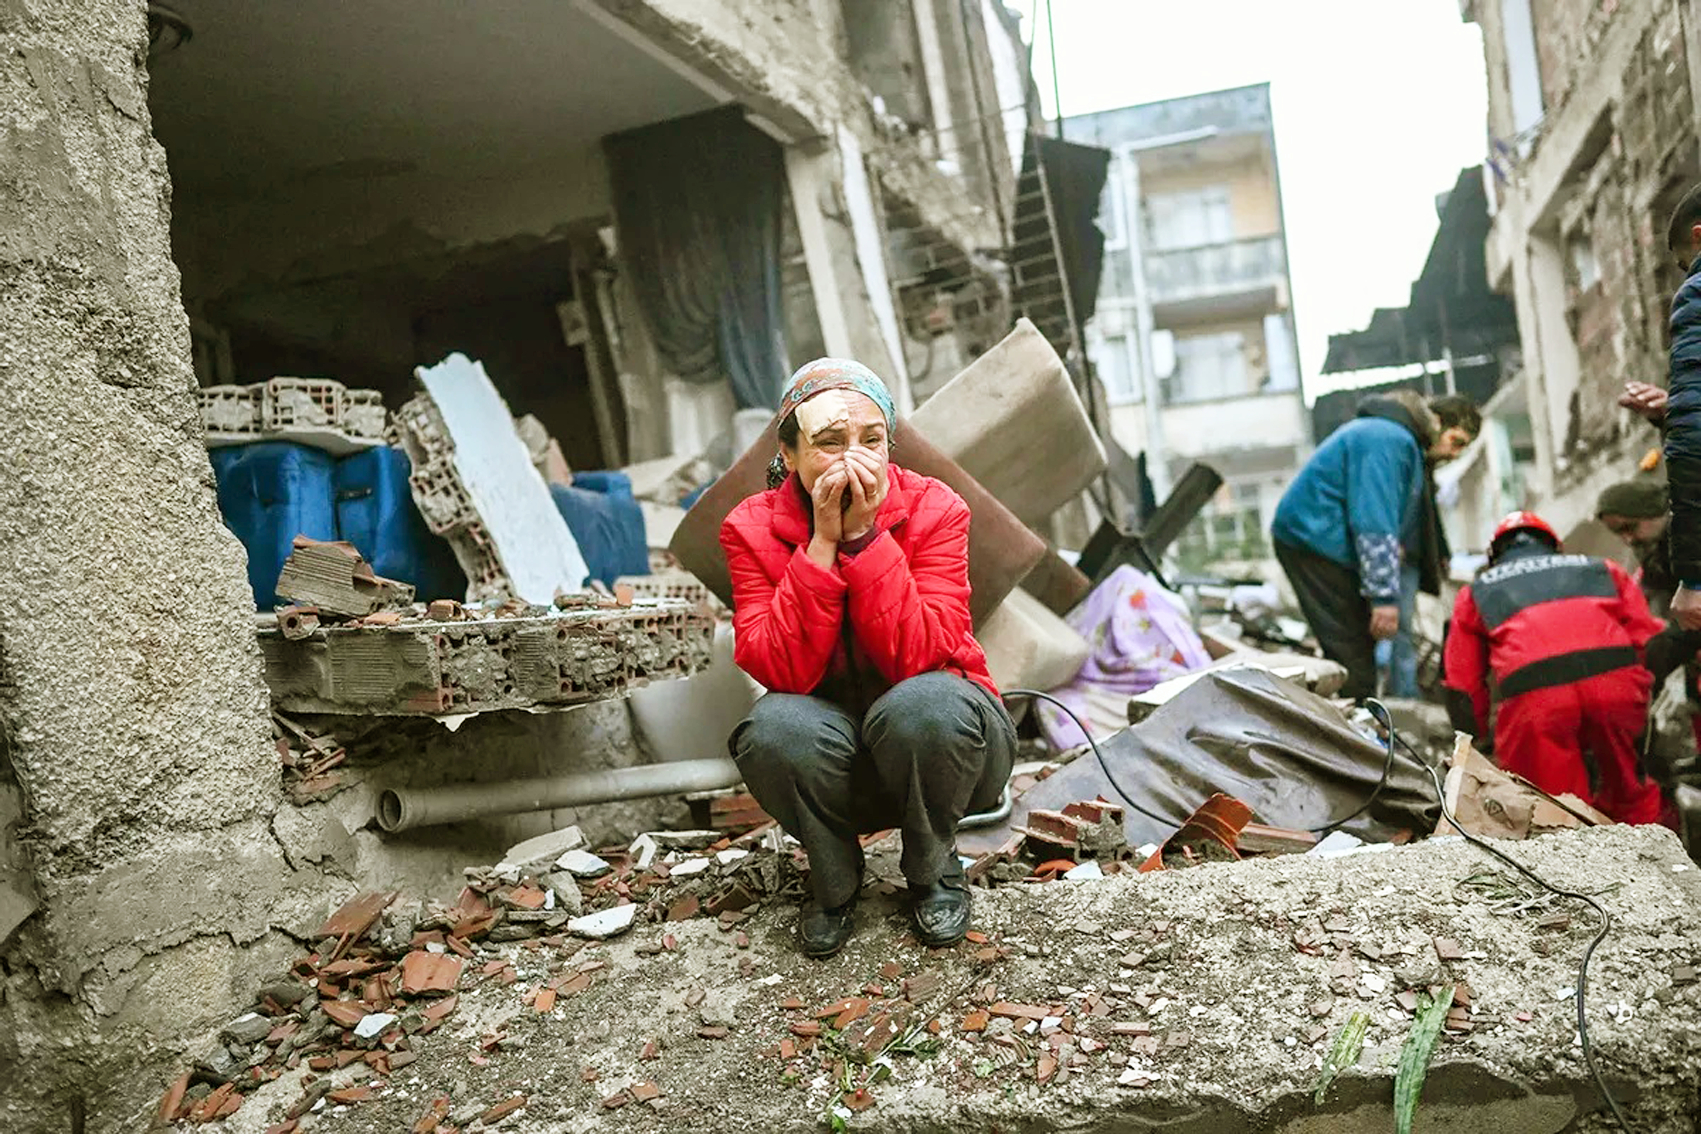 Một phụ nữ sống sót sau trận động đất không kìm được nước mắt trong khi lực lượng cứu hộ nỗ lực tìm kiếm nạn nhân và những người sống sót khác ở Hatay, Thổ Nhĩ Kỳ - ẢNH: AFP